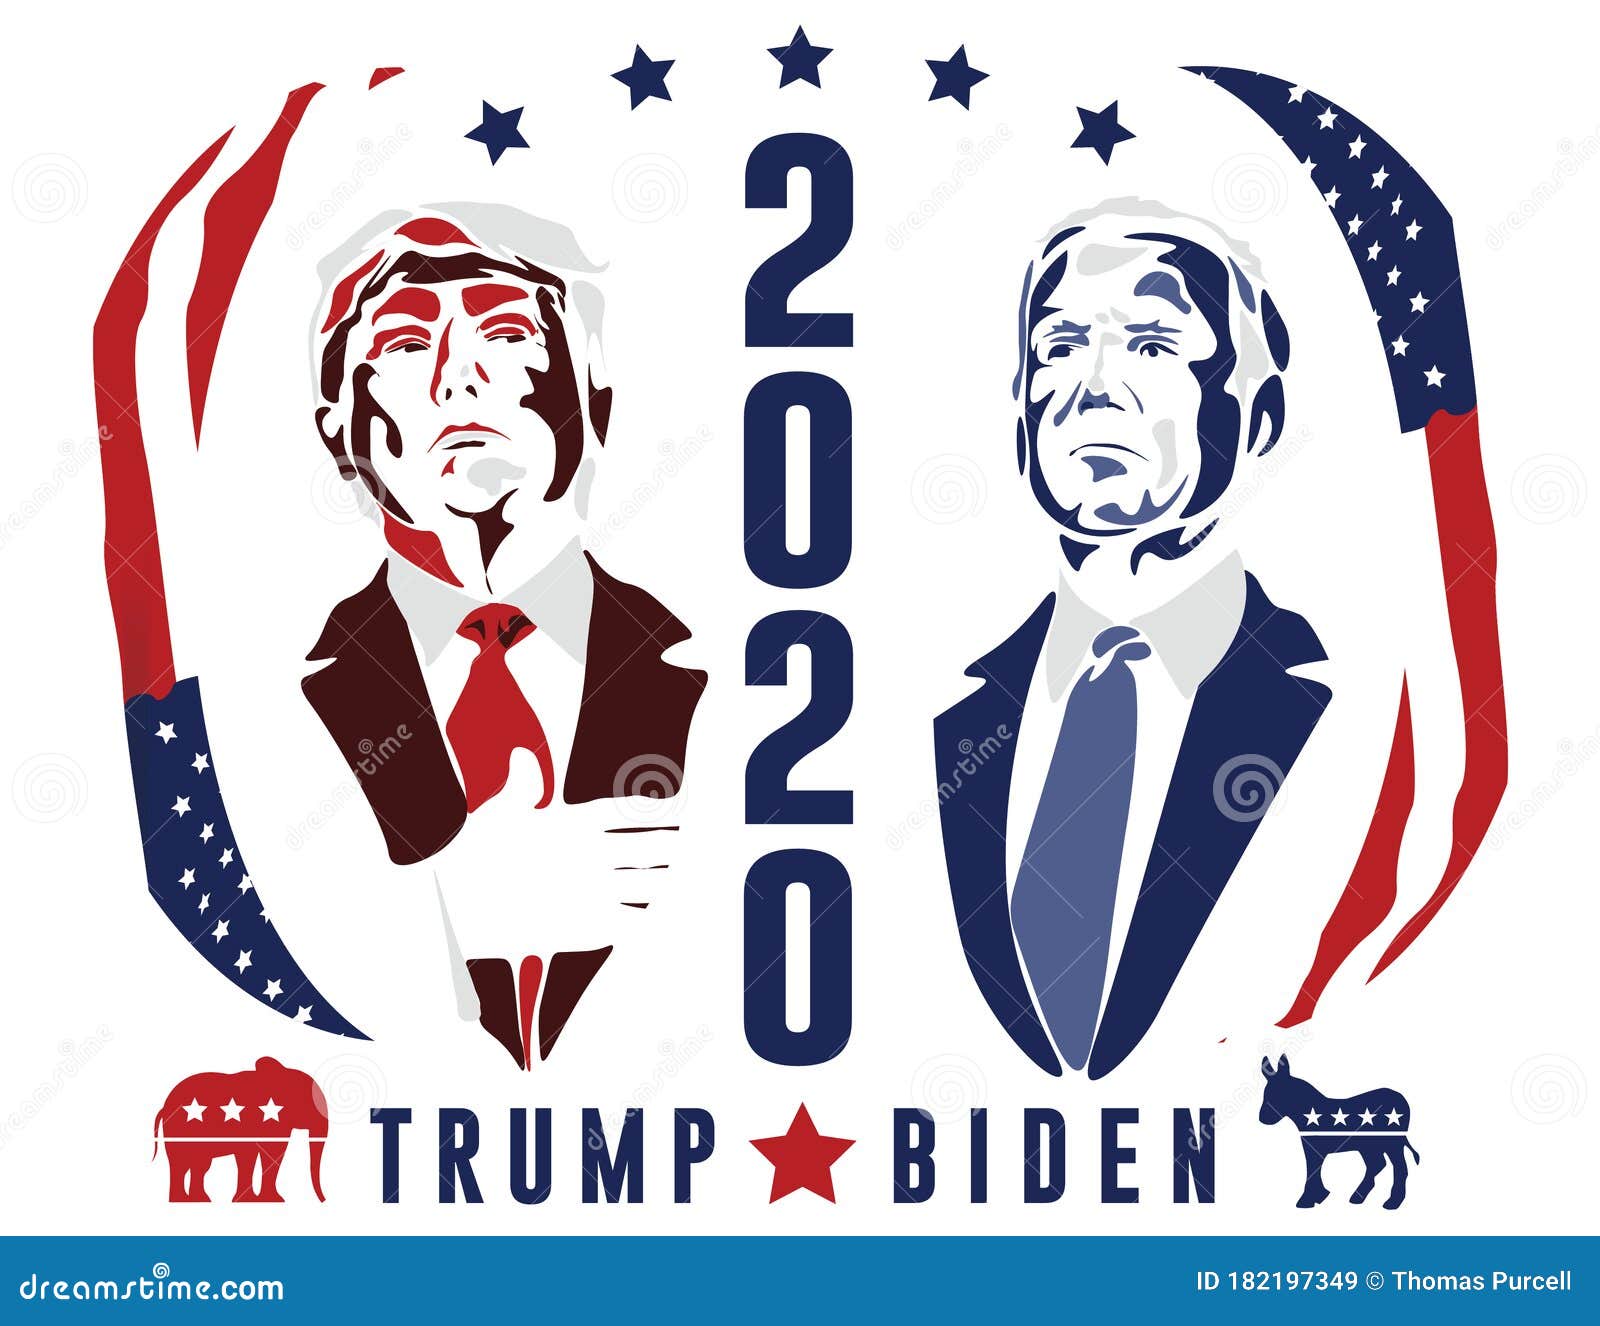 NO THIS TIME VOTE FOR BIDEN PRESIDENT 2020 Advertising Banner Vinyl Flag Sign 